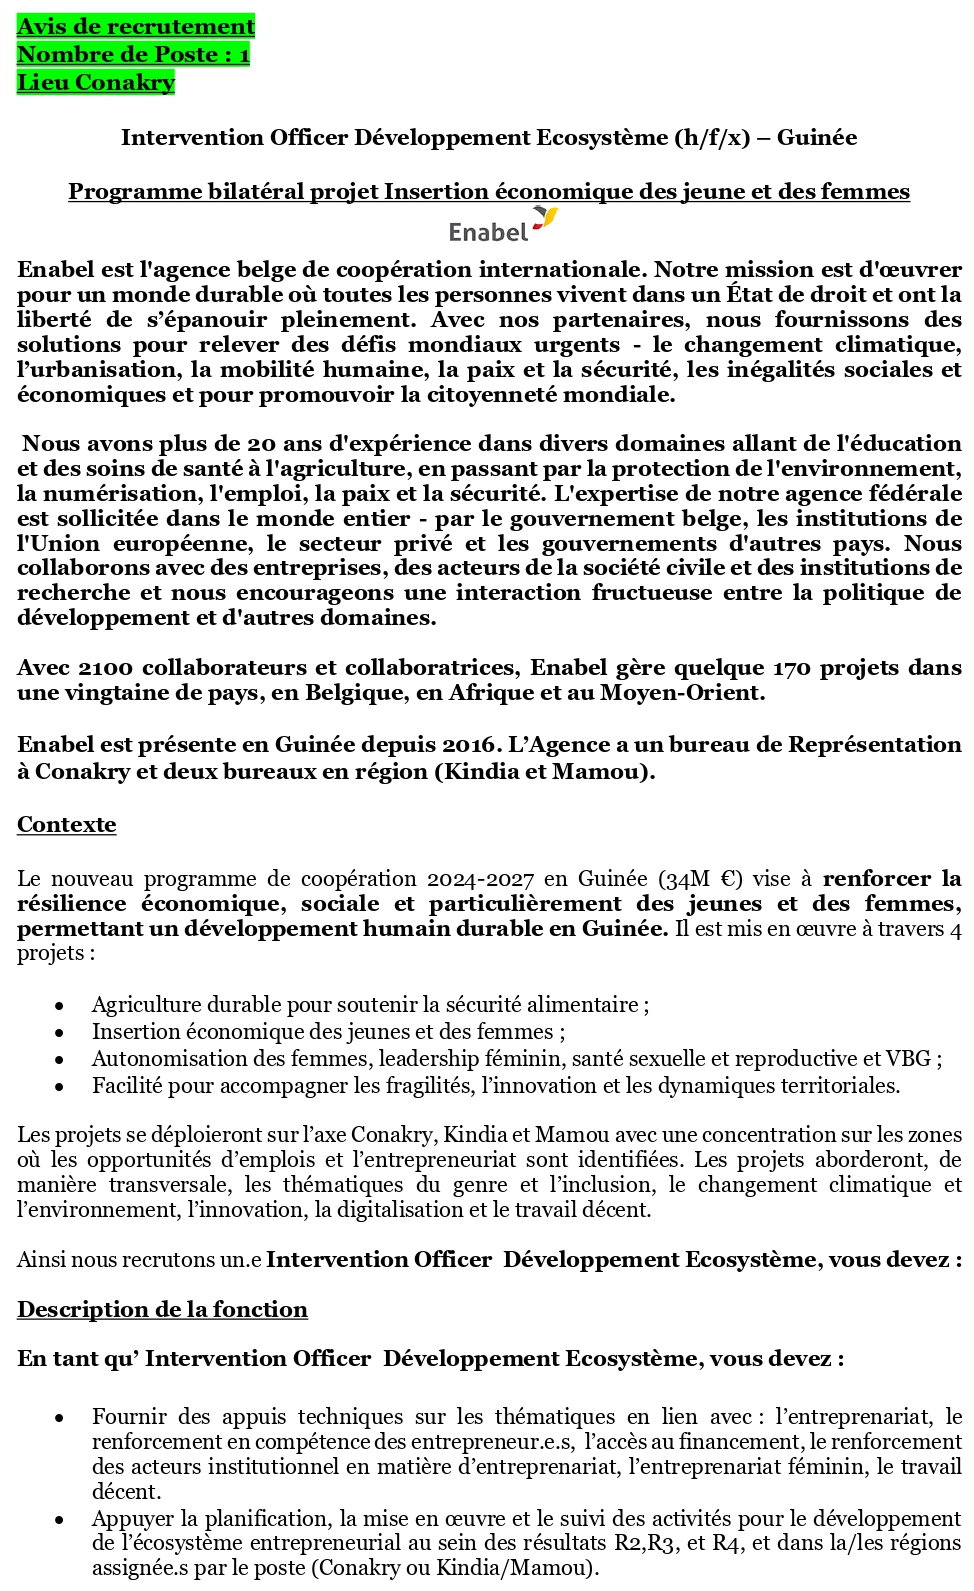 Avis de recrutement d'un Intervention Officer Développement Ecosystème (h/f/x) – Guinée | Page 1